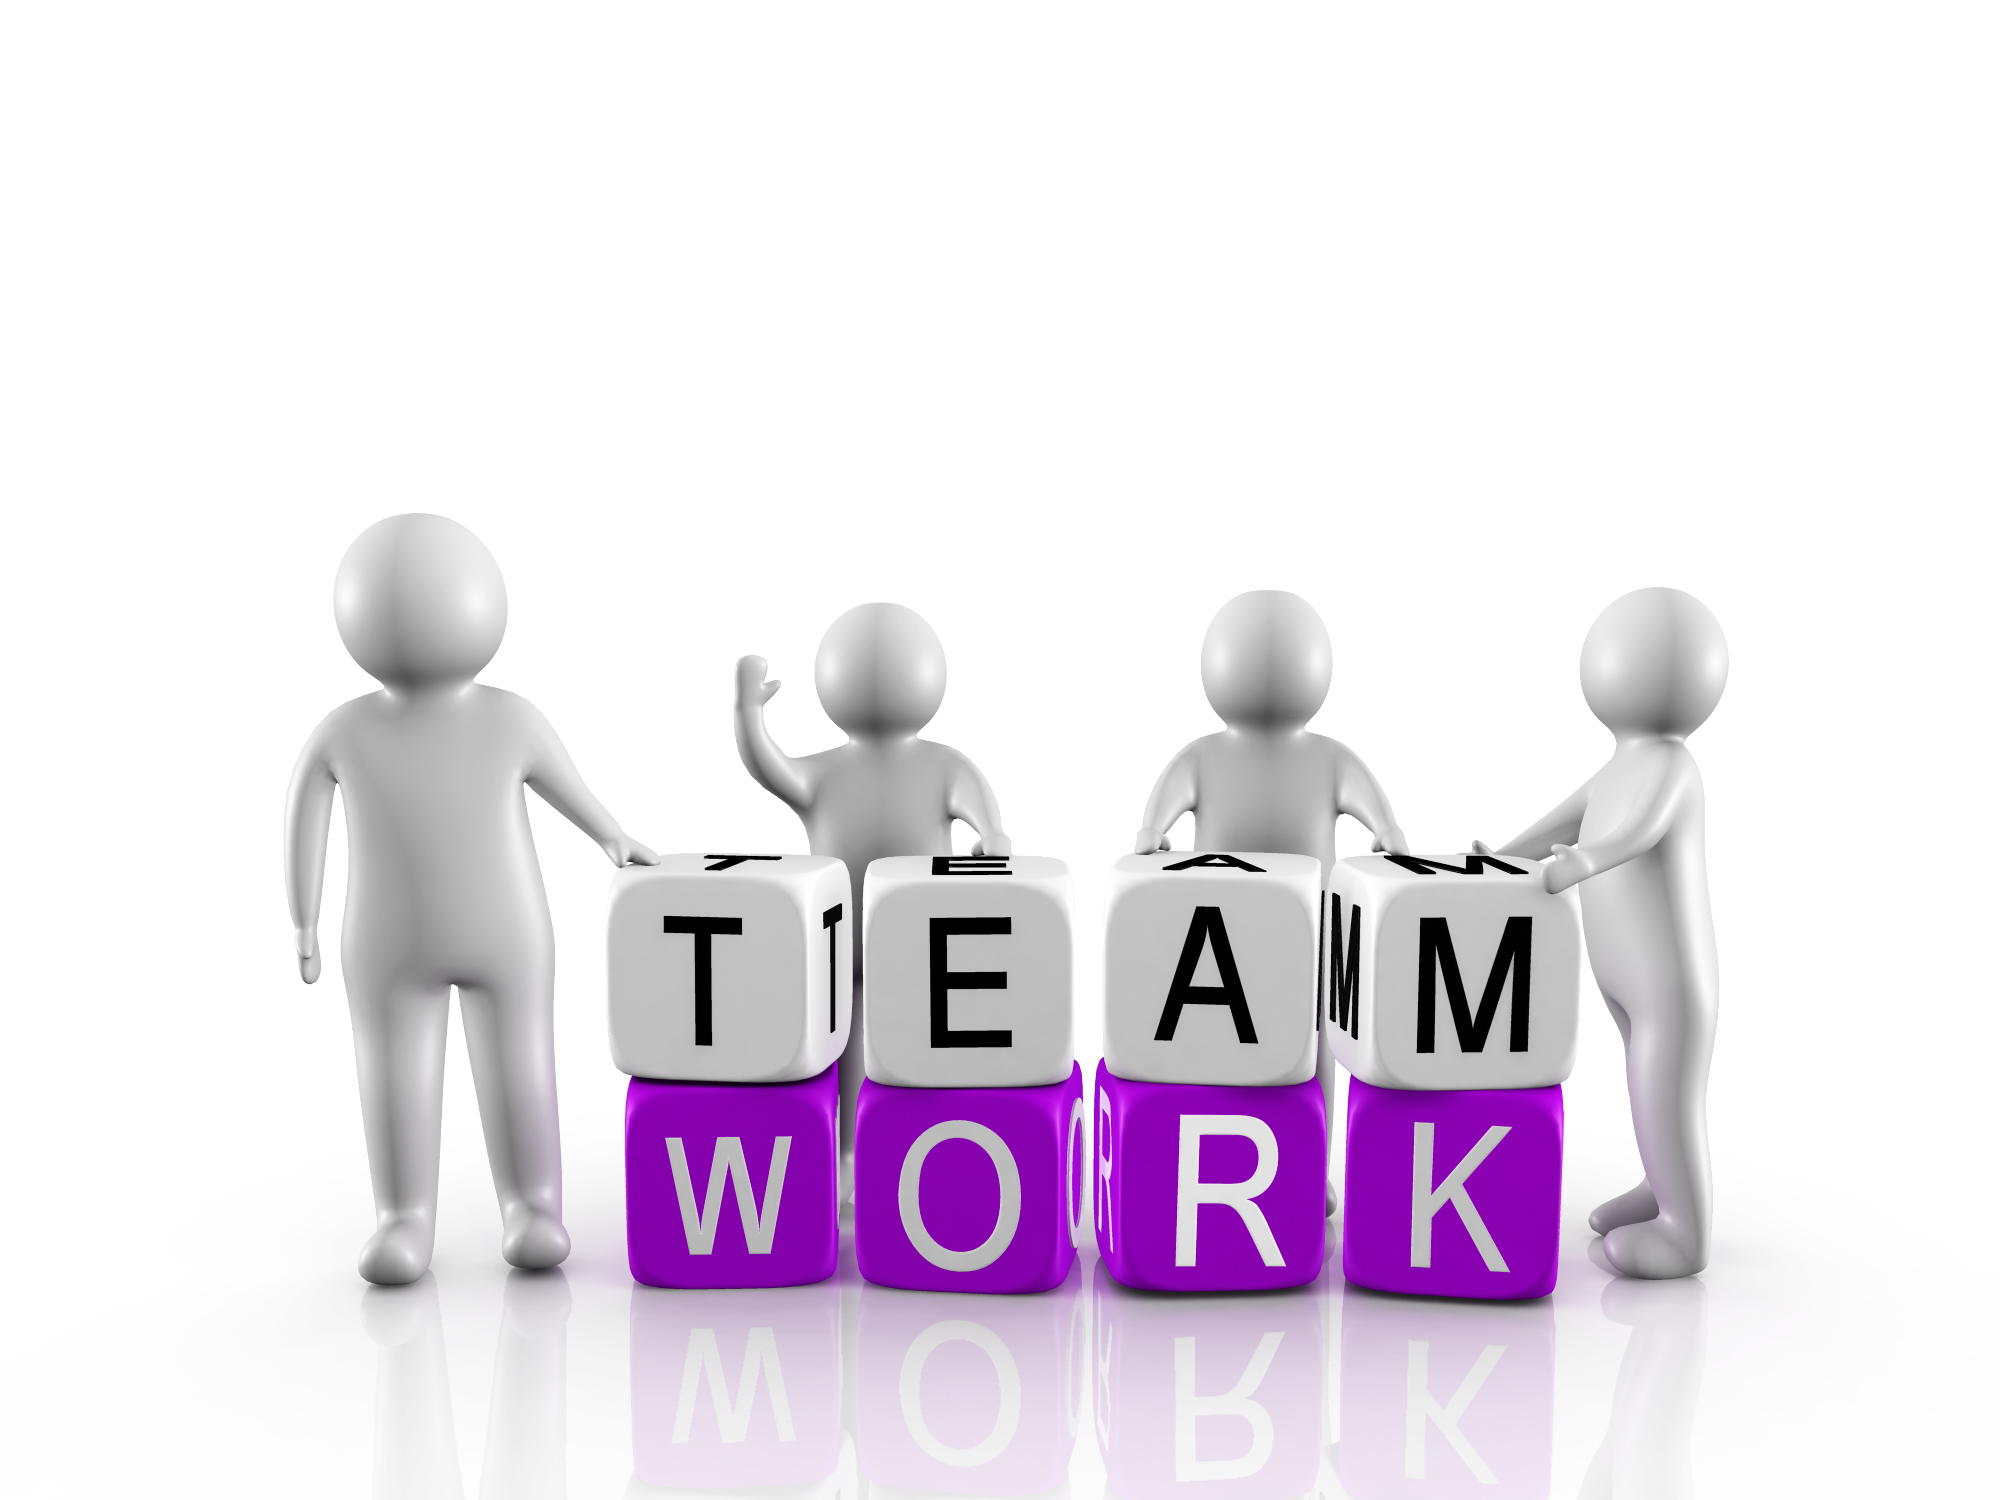 Trabajo en equipo y colaboración